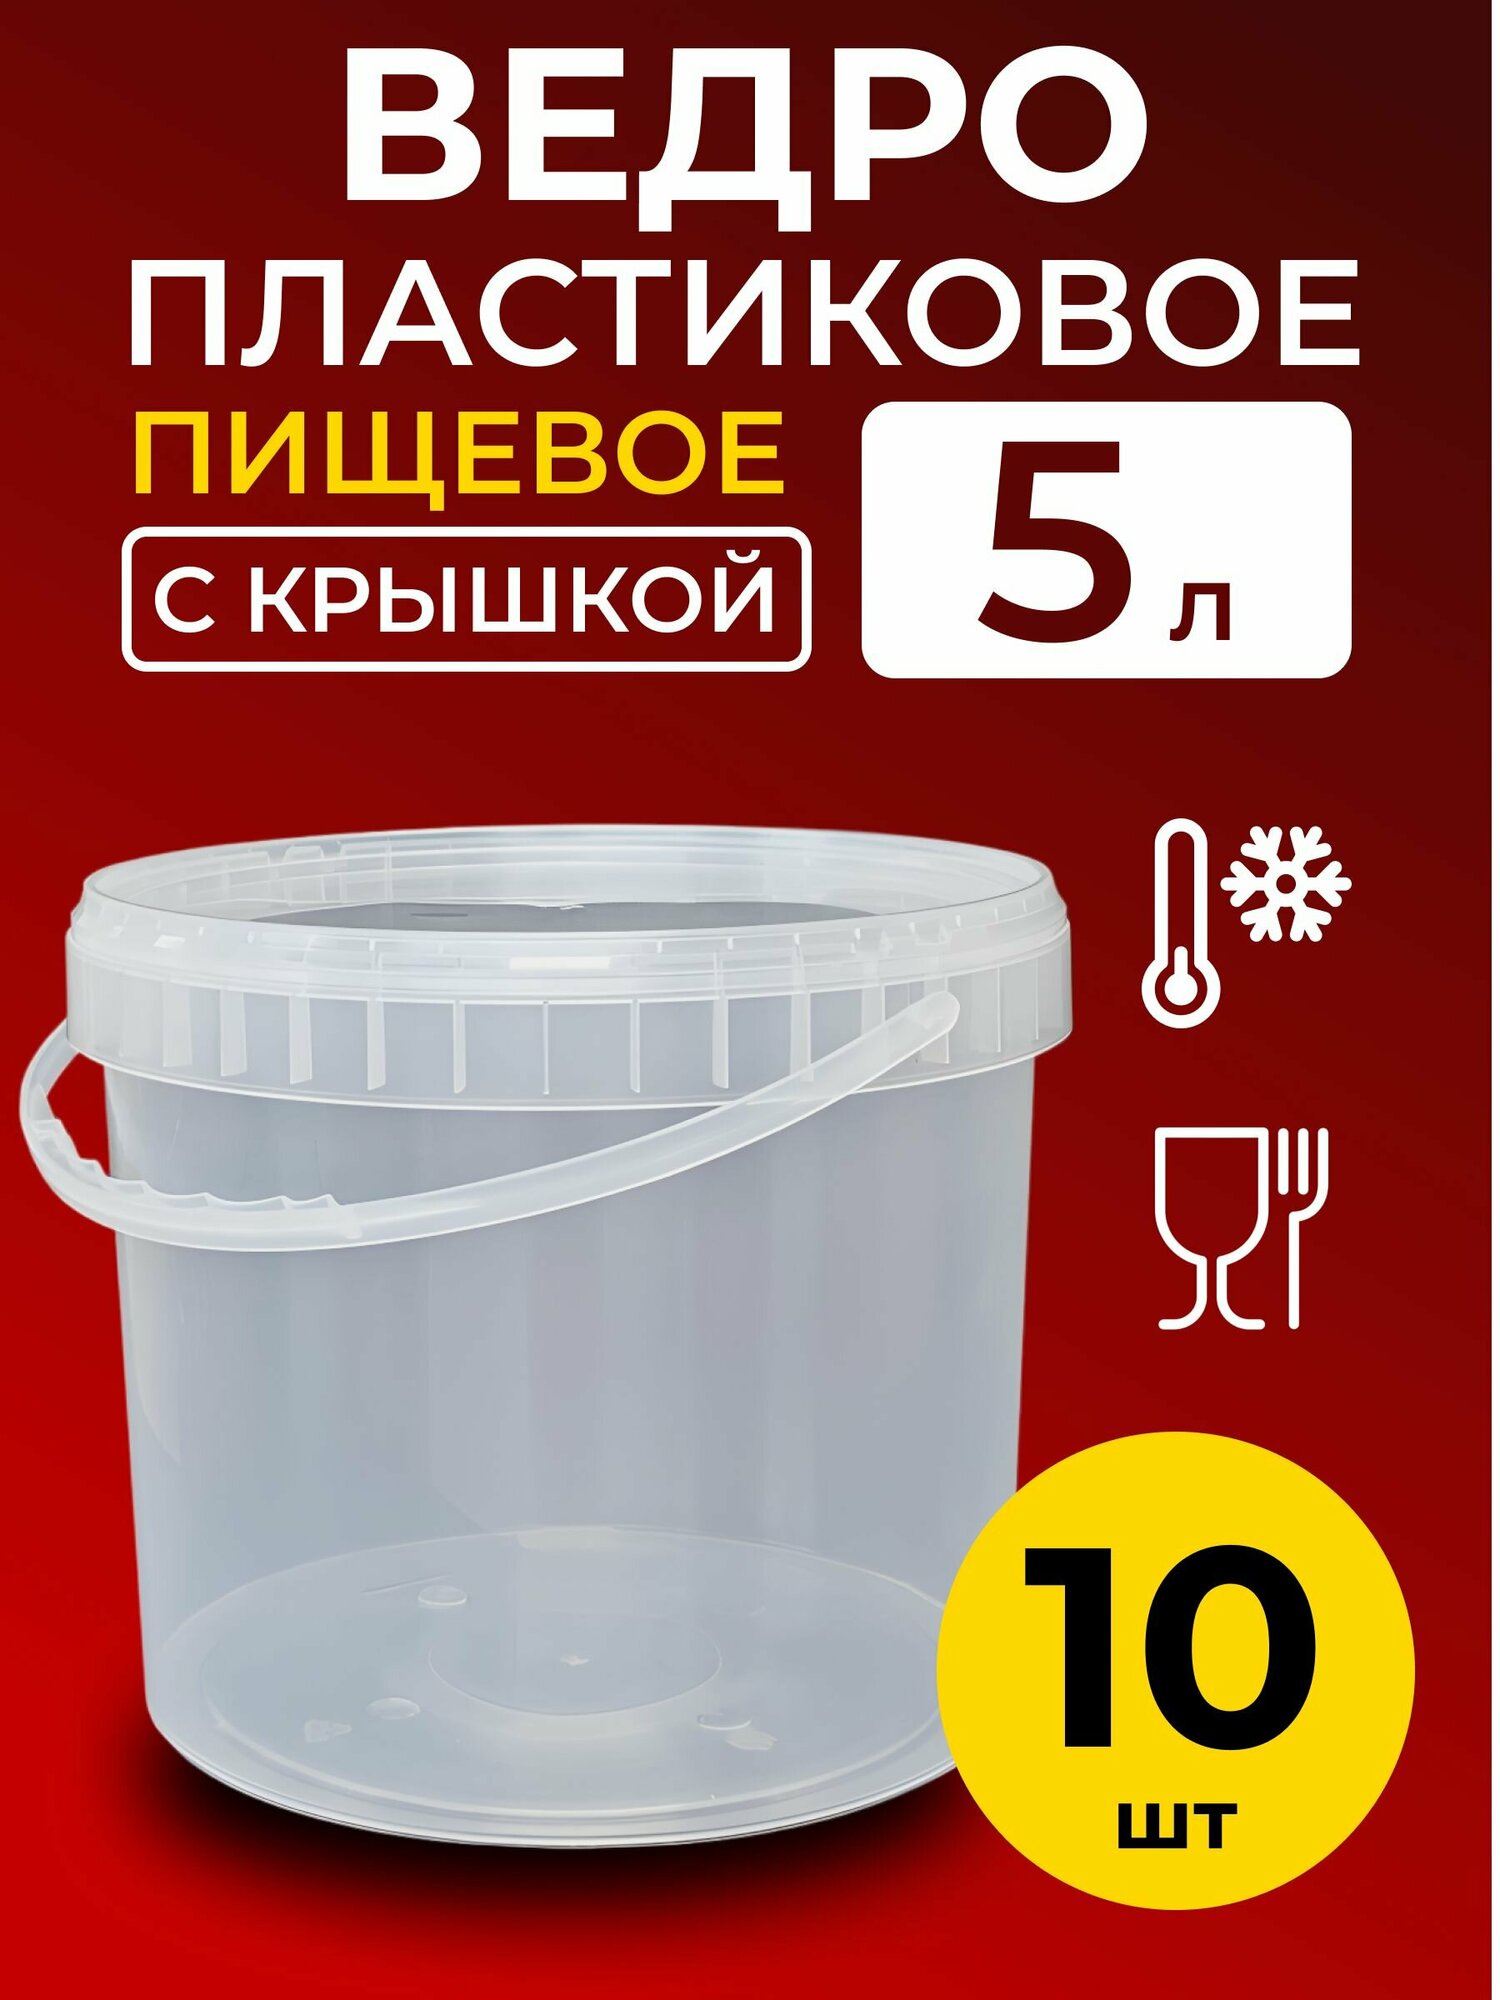 Ведро пластиковое пищевое с крышкой 5л (прозрачное), 10 шт.